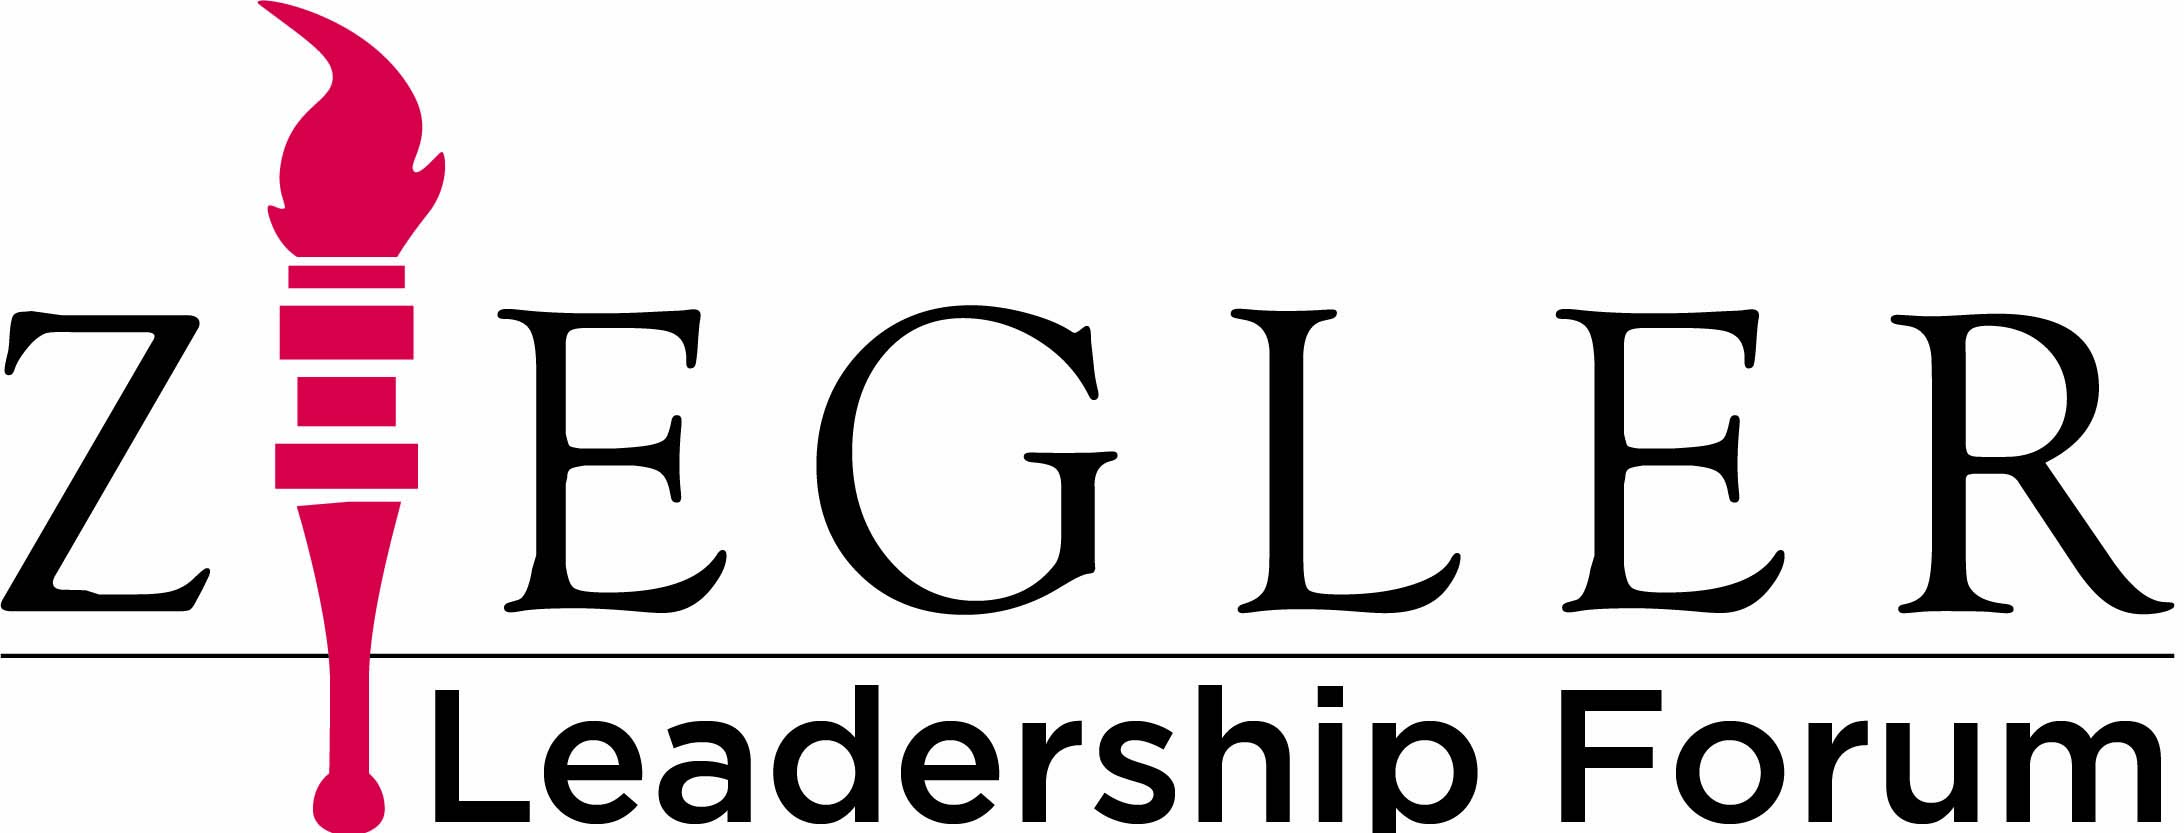 Ziegler Logo